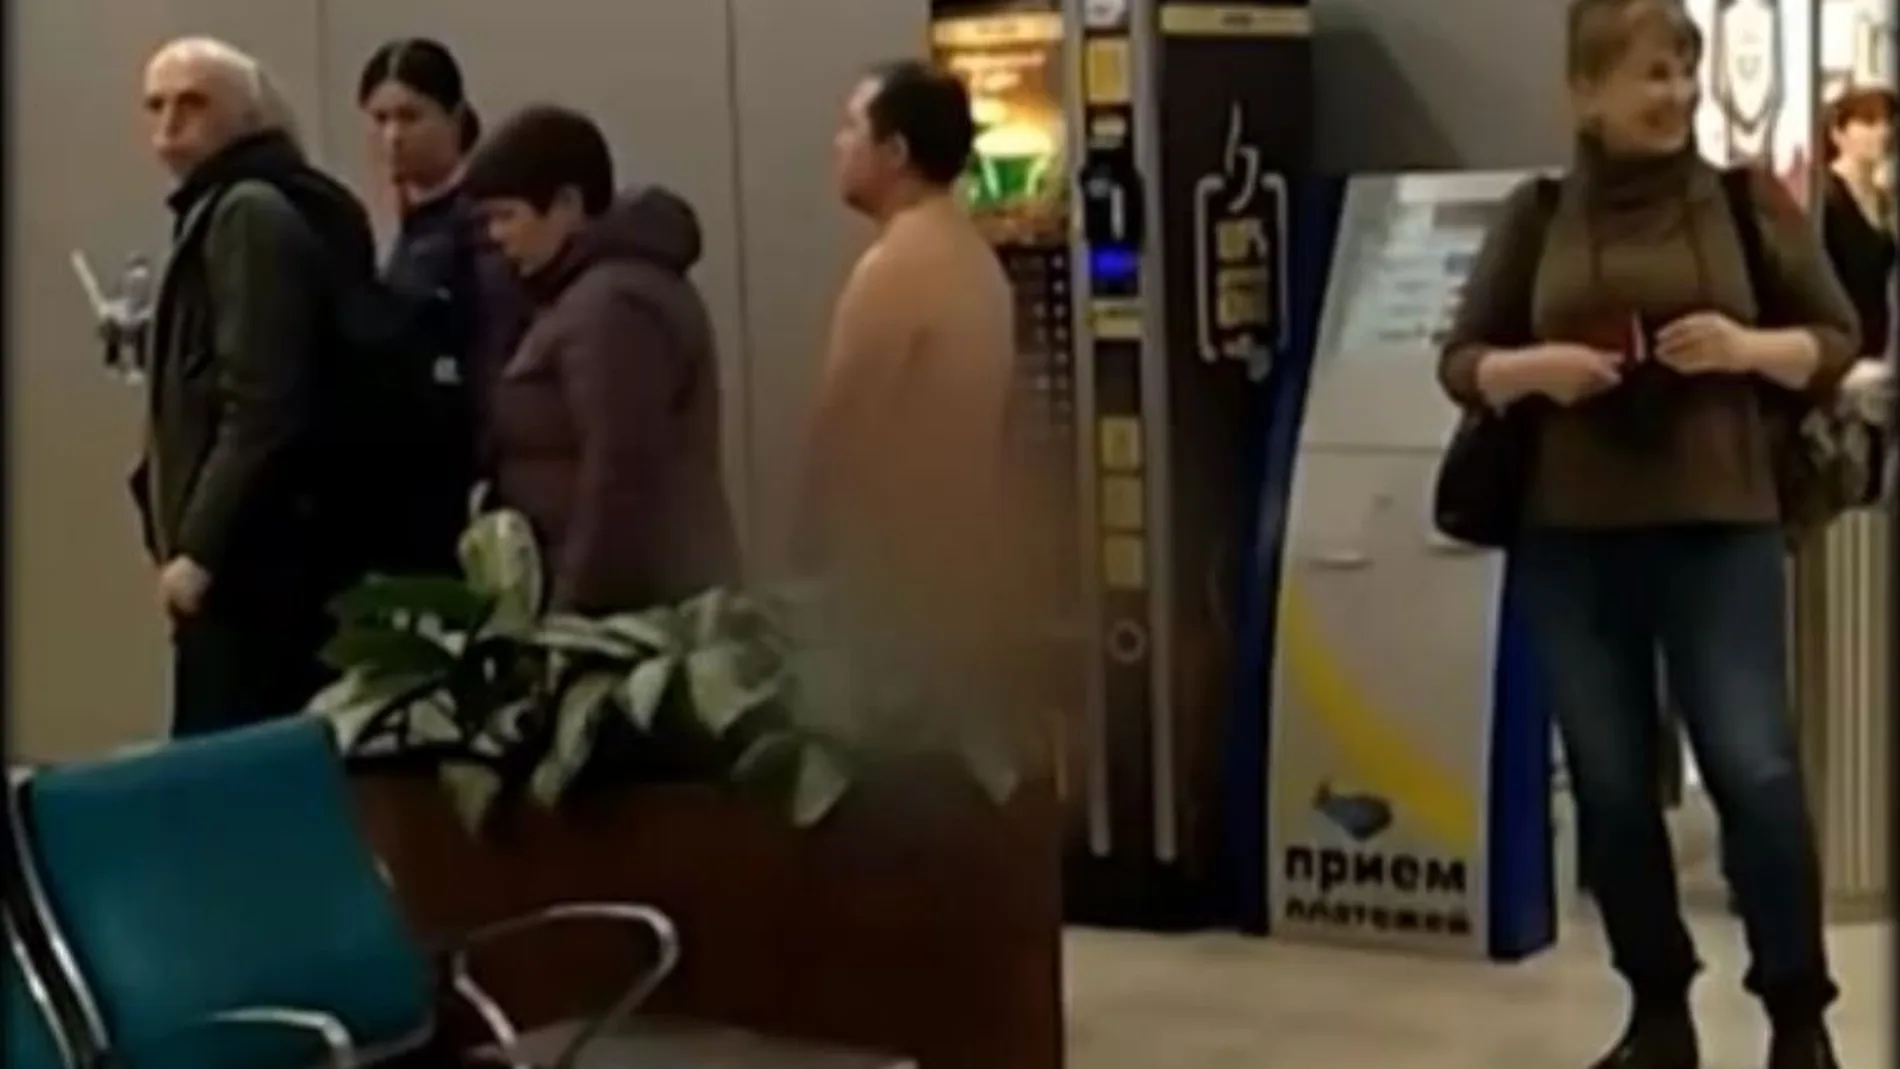 El individuo fue arrestado por los agentes del aeropuerto de Domodedovo mientras corría por la pasarela hacia el avión / YouTube